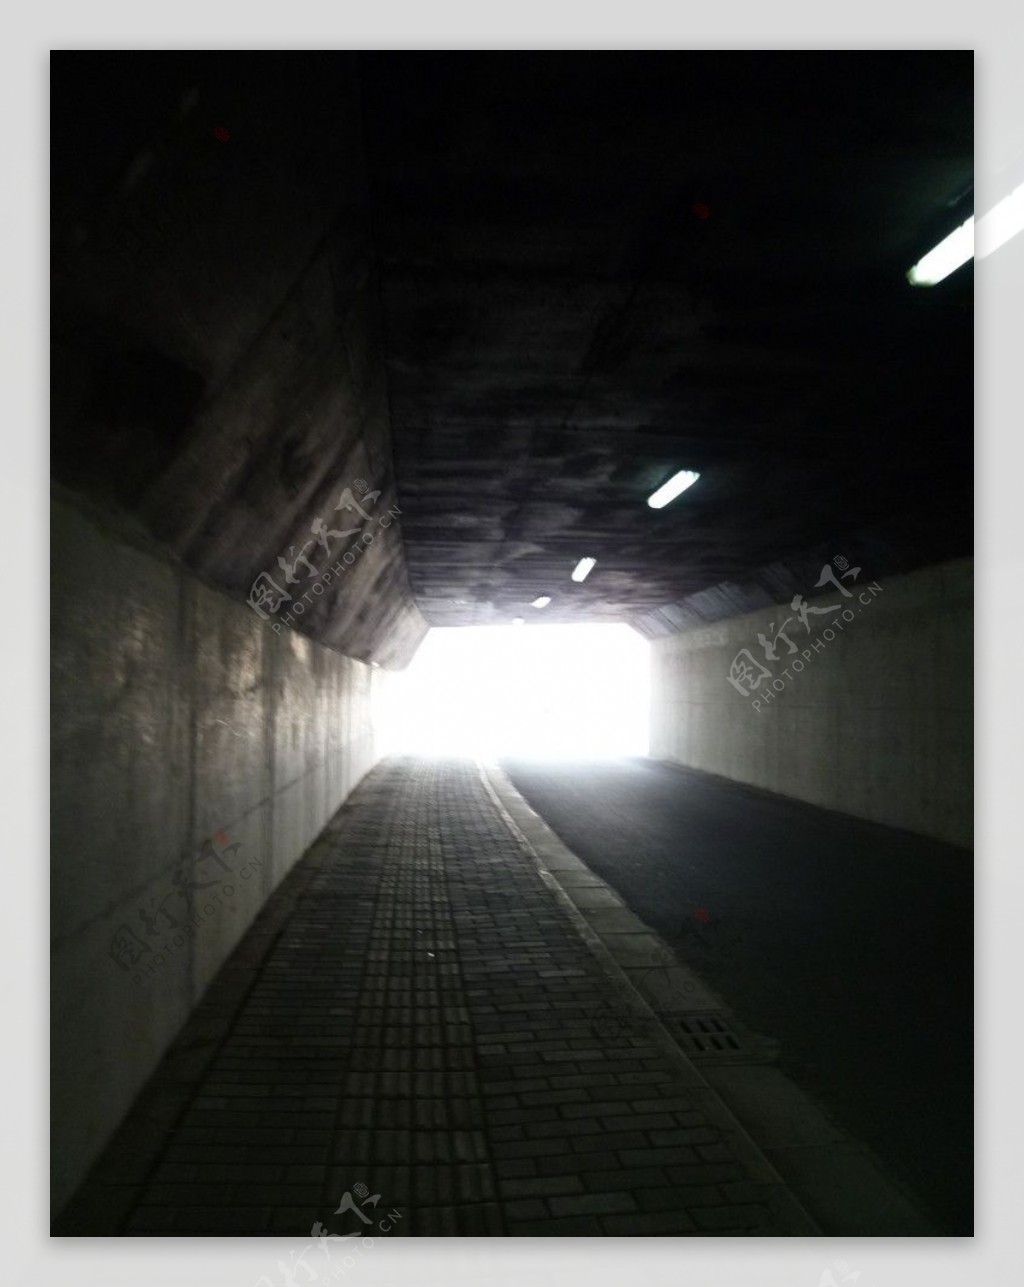 隧道口图片